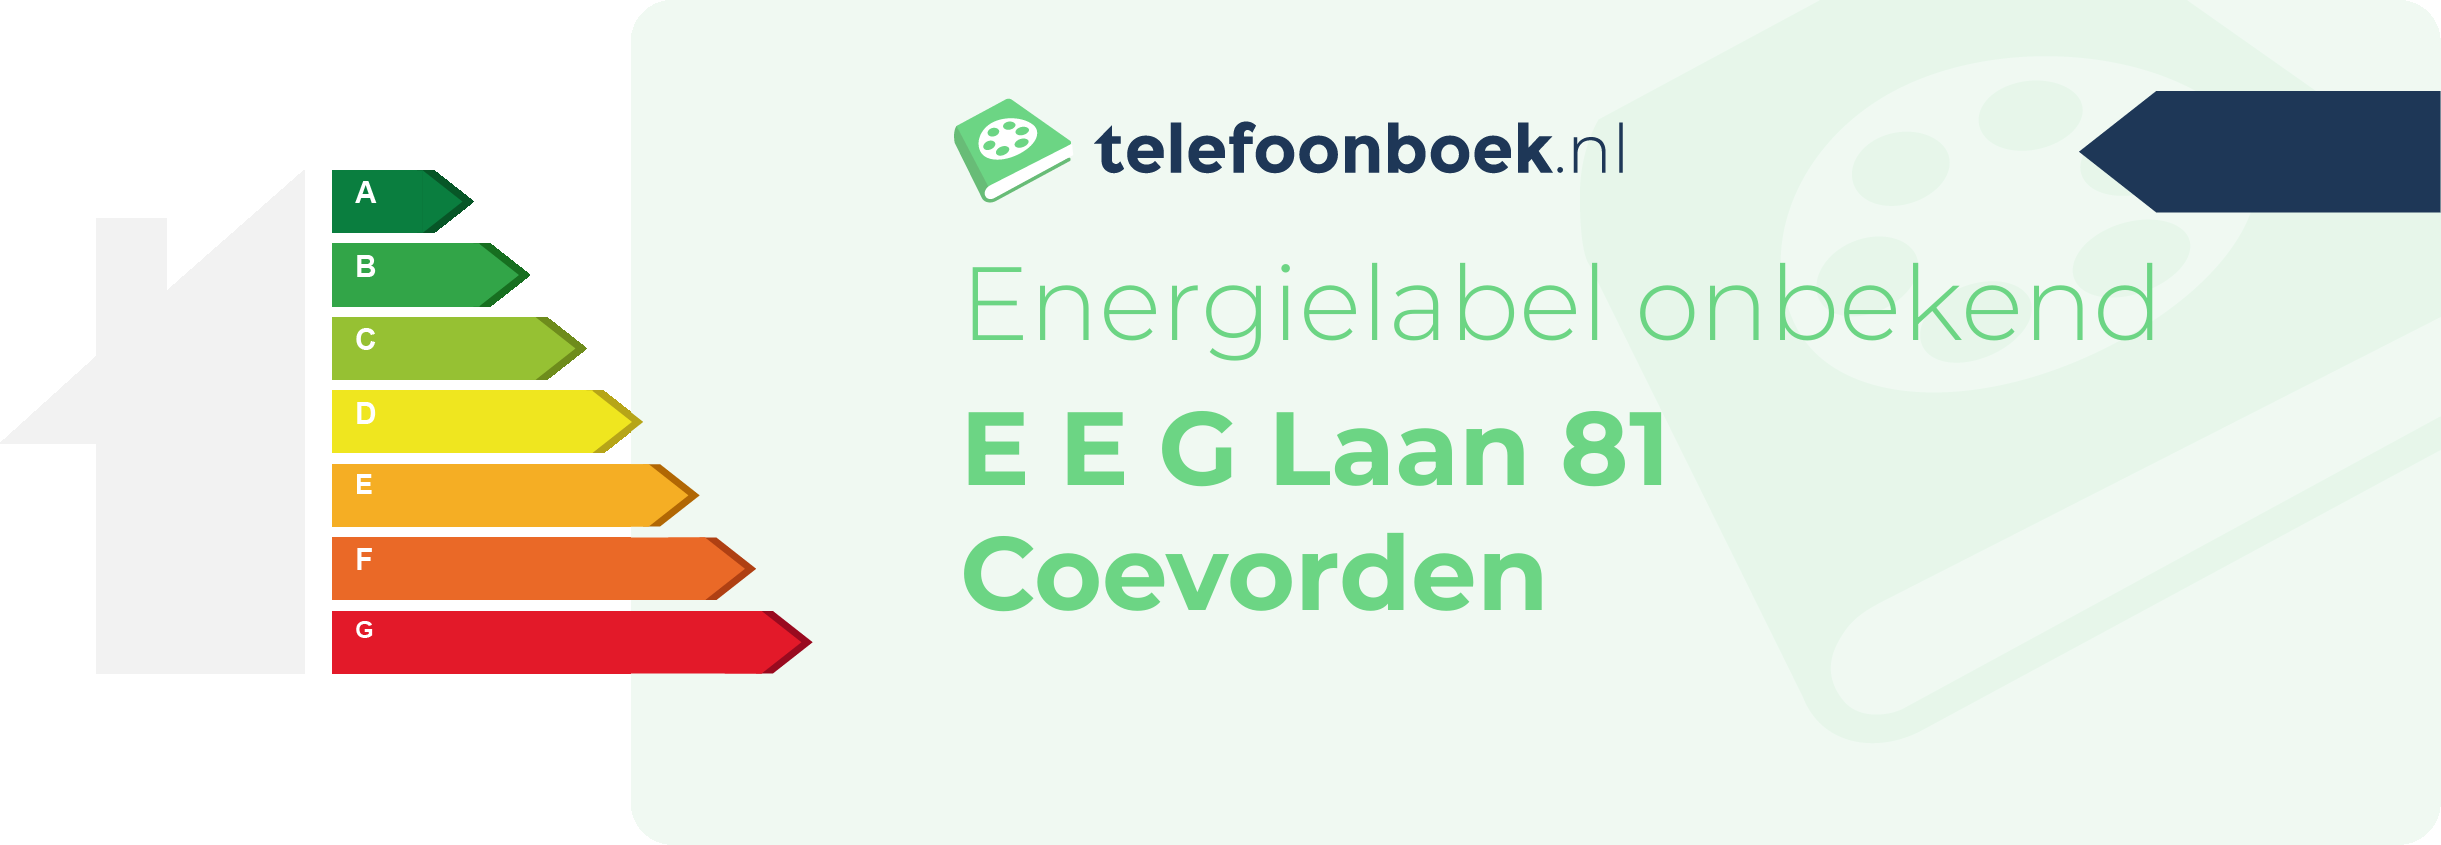 Energielabel E E G Laan 81 Coevorden